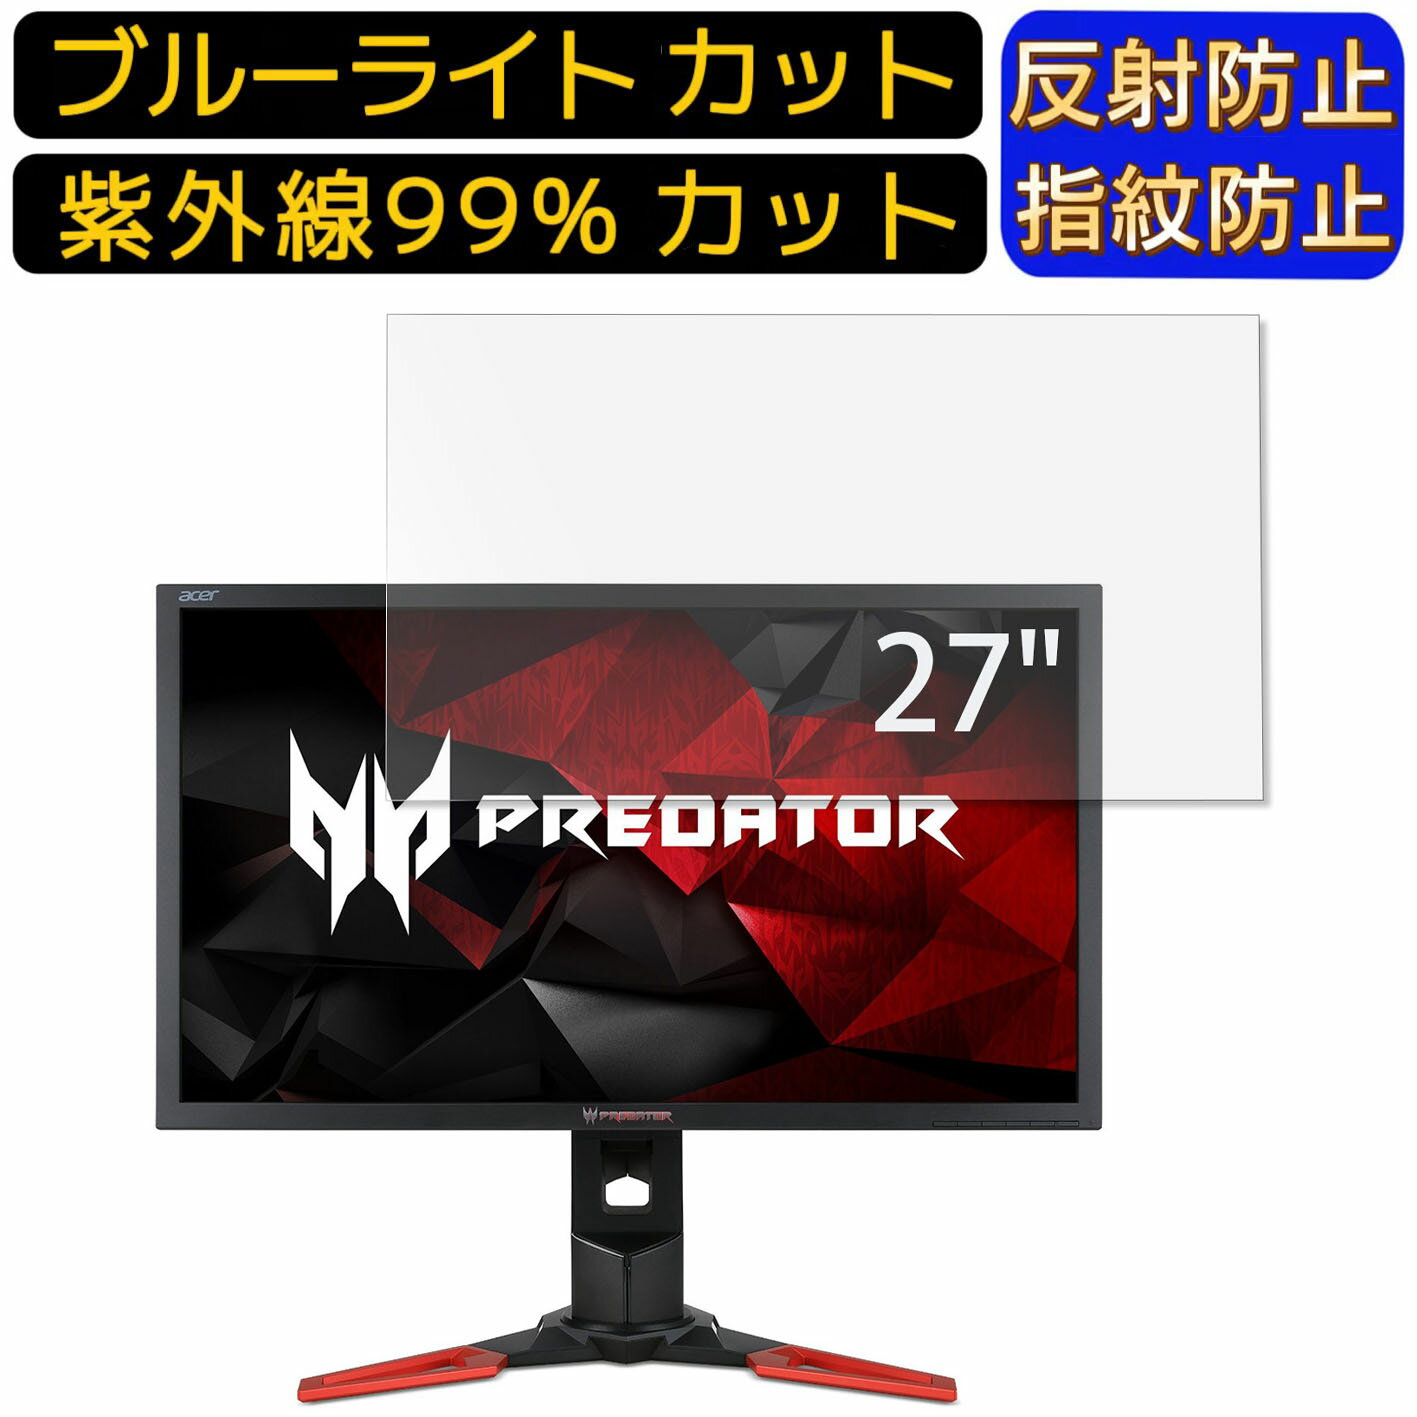 【ポイント2倍】Acer XB271Hbmiprz 27イン